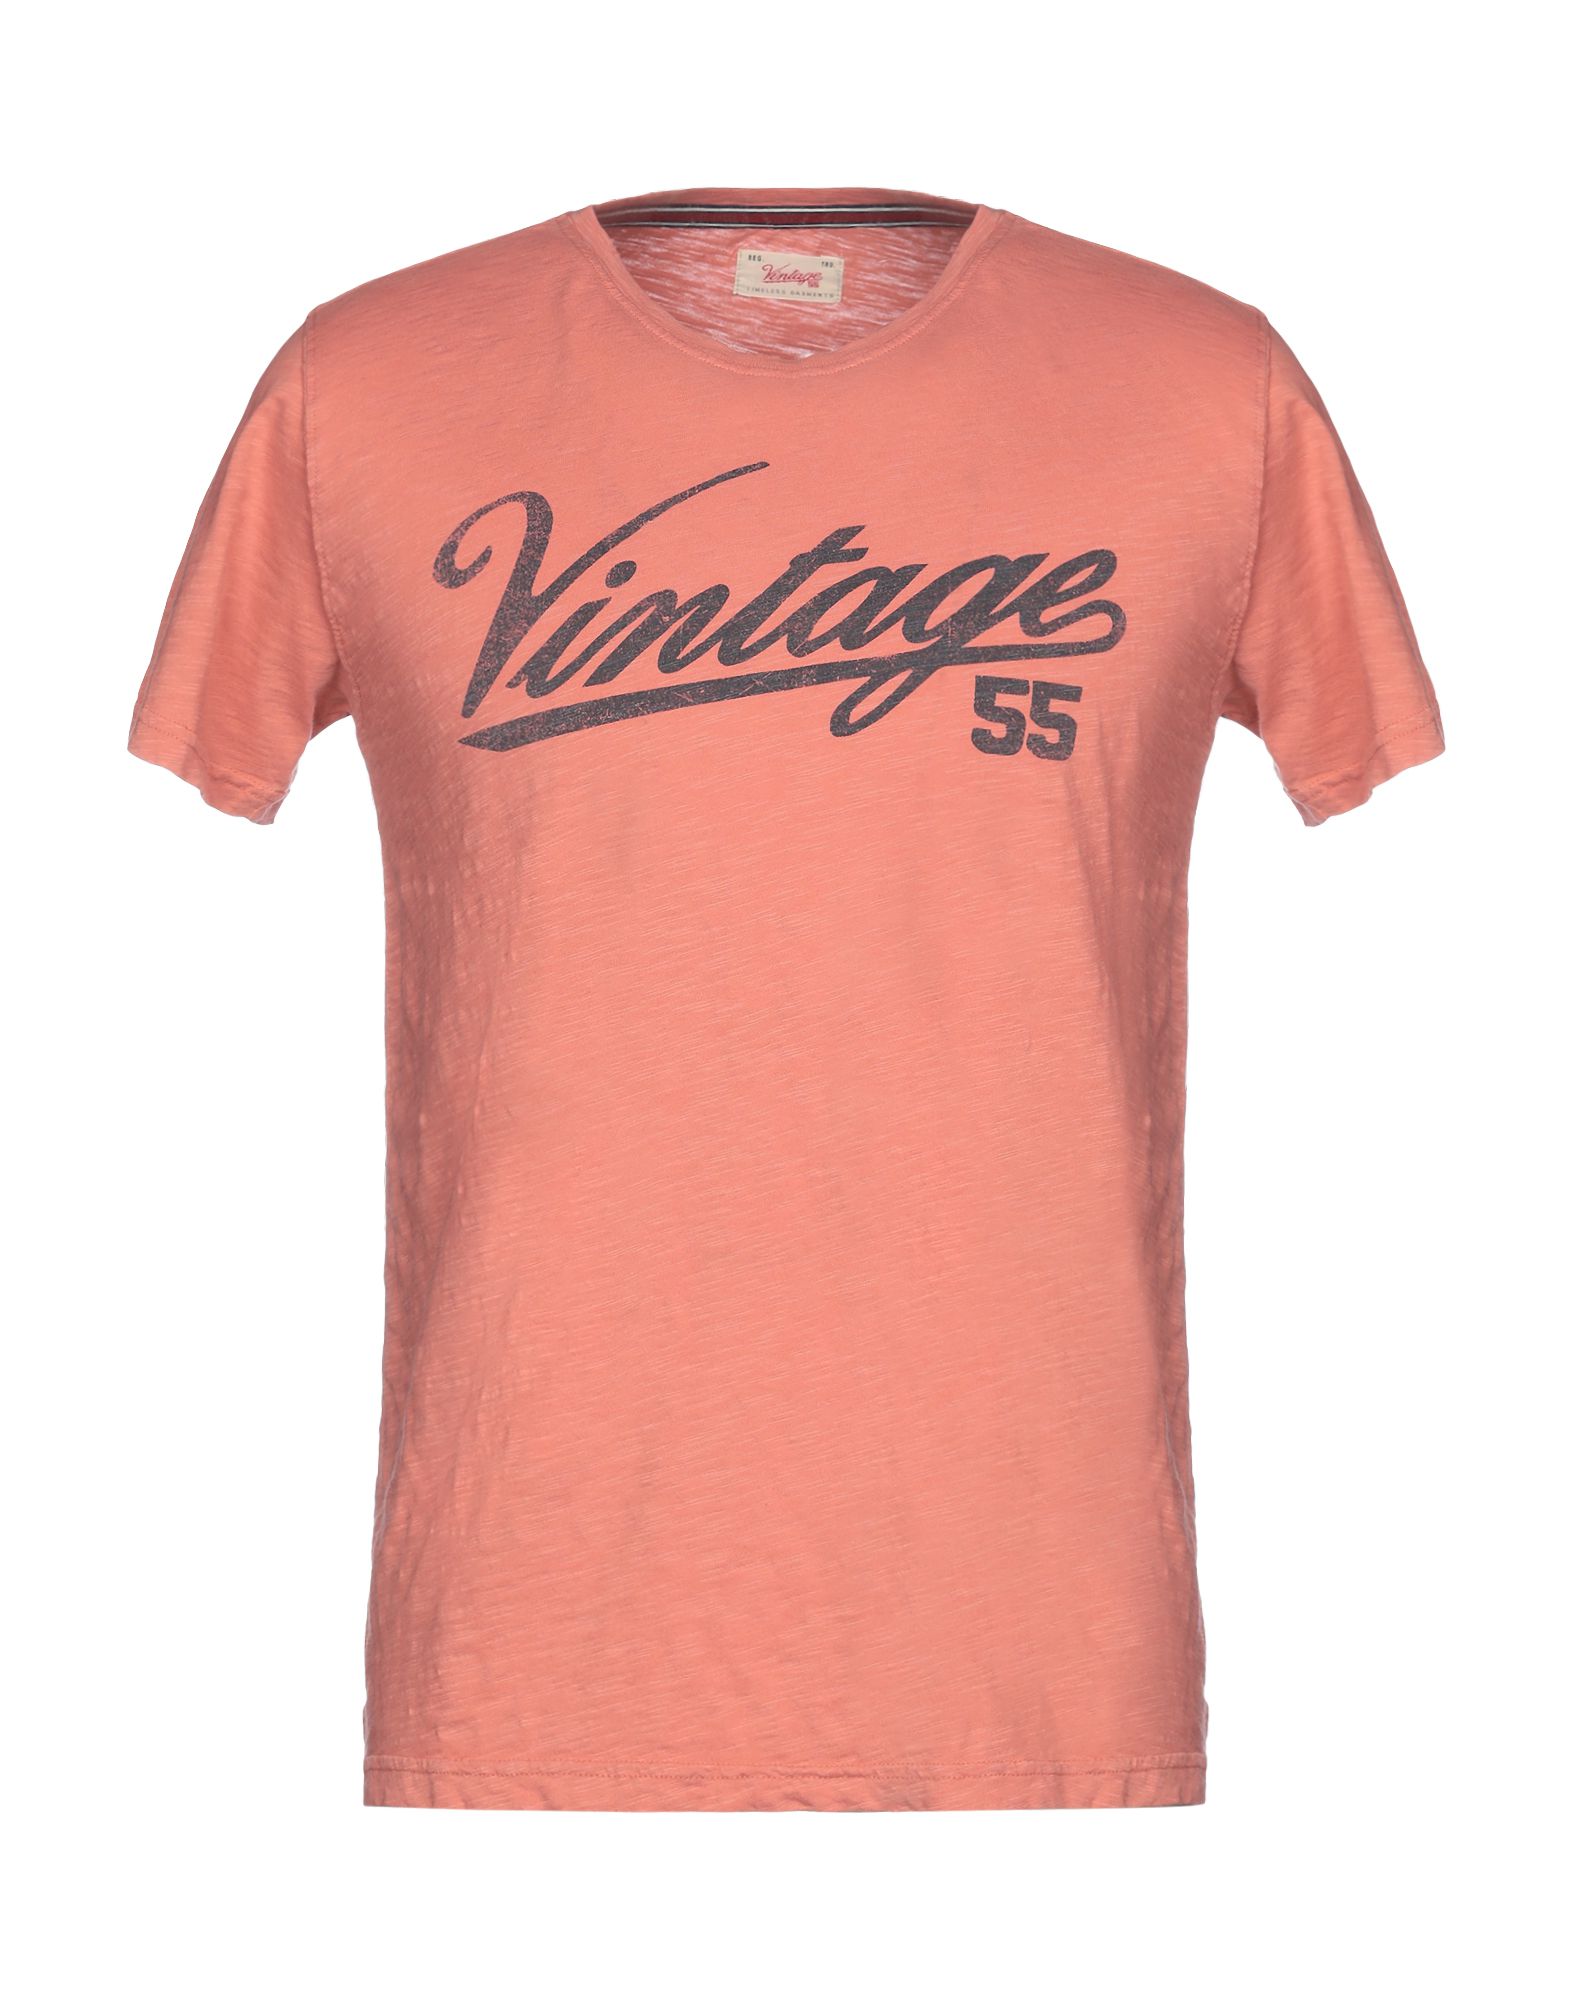 《送料無料》VINTAGE 55 メンズ T シャツ ローズピンク M コットン 100%